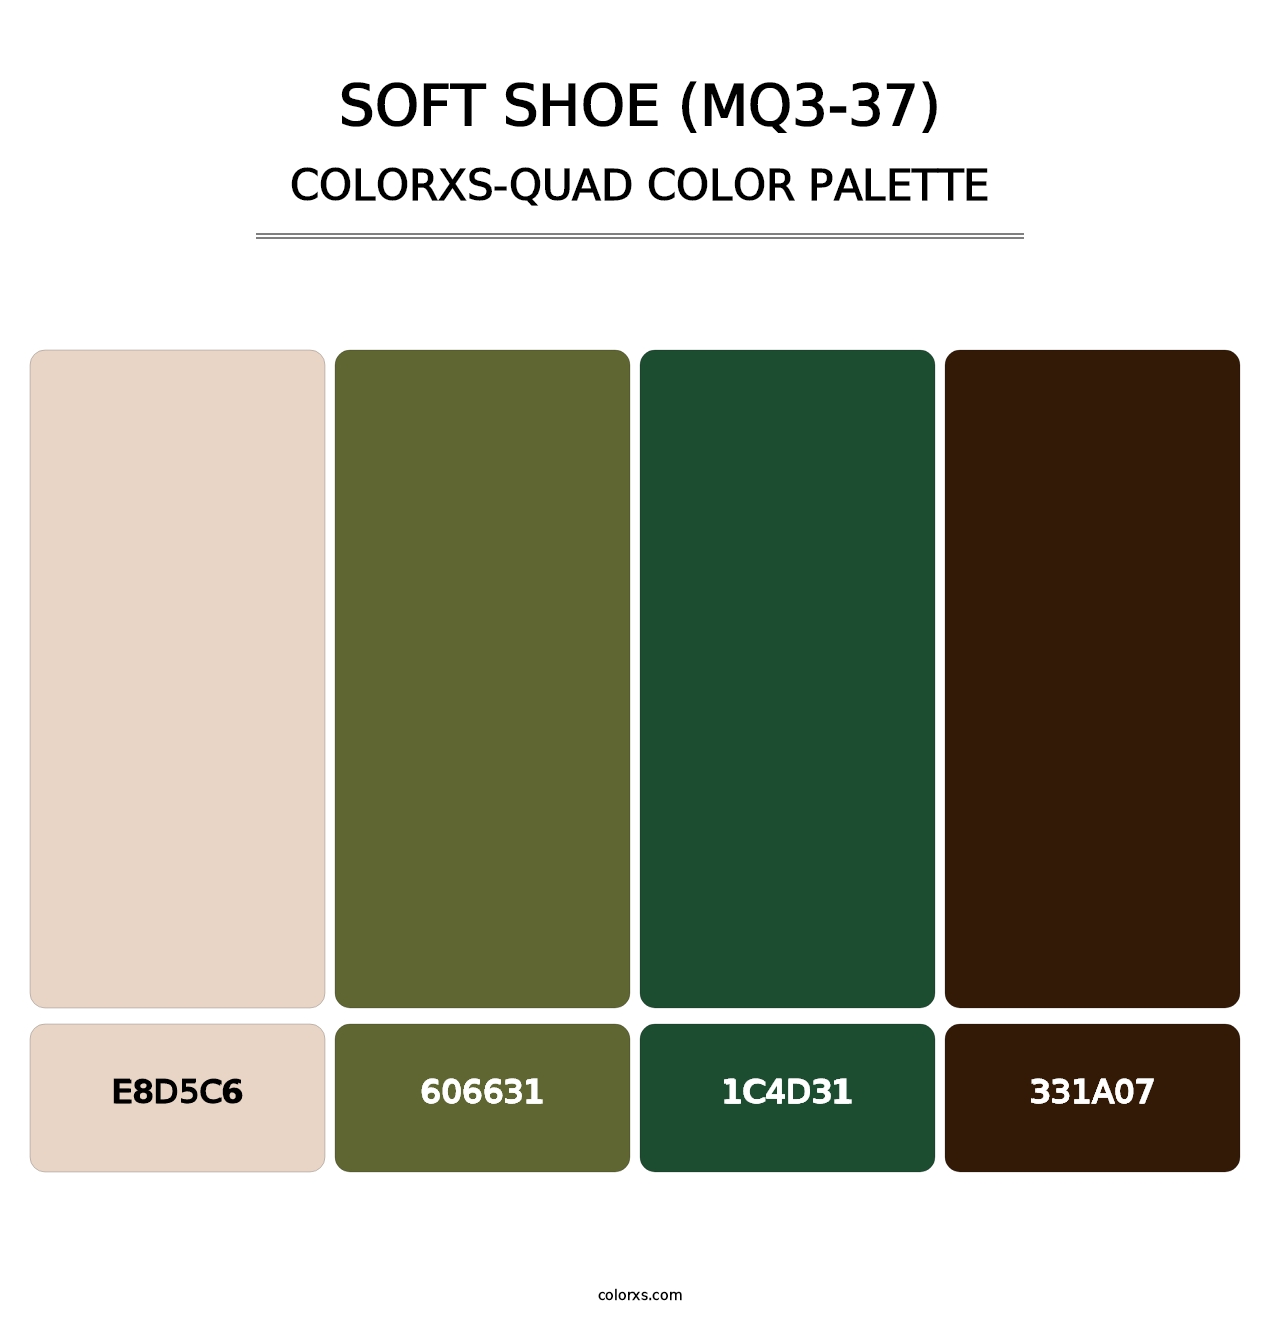 Soft Shoe (MQ3-37) - Colorxs Quad Palette